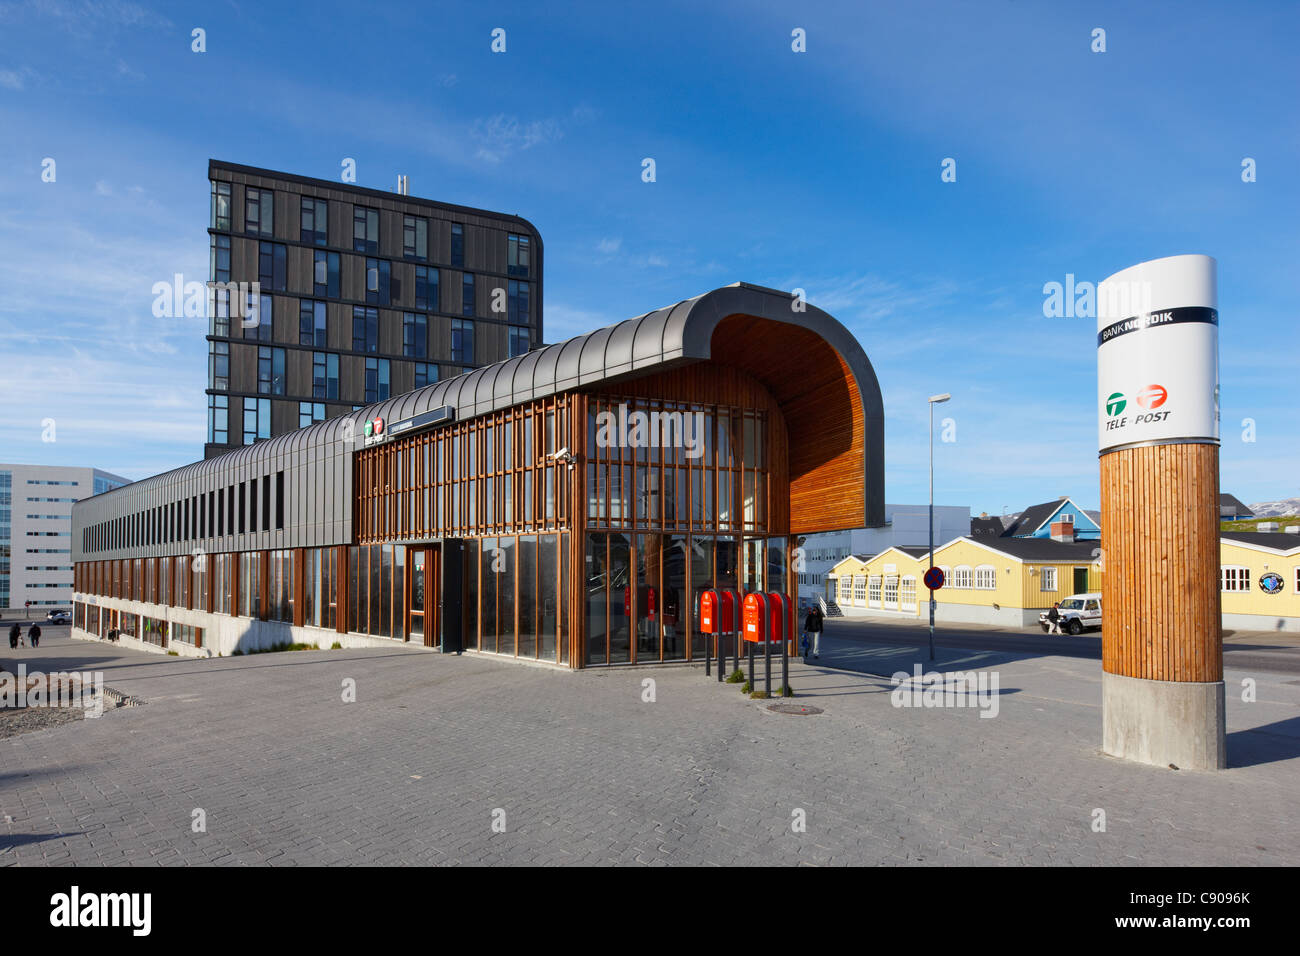 Ufficio postale (Posthus) & telecentro, Nuuk, Groenlandia Foto Stock